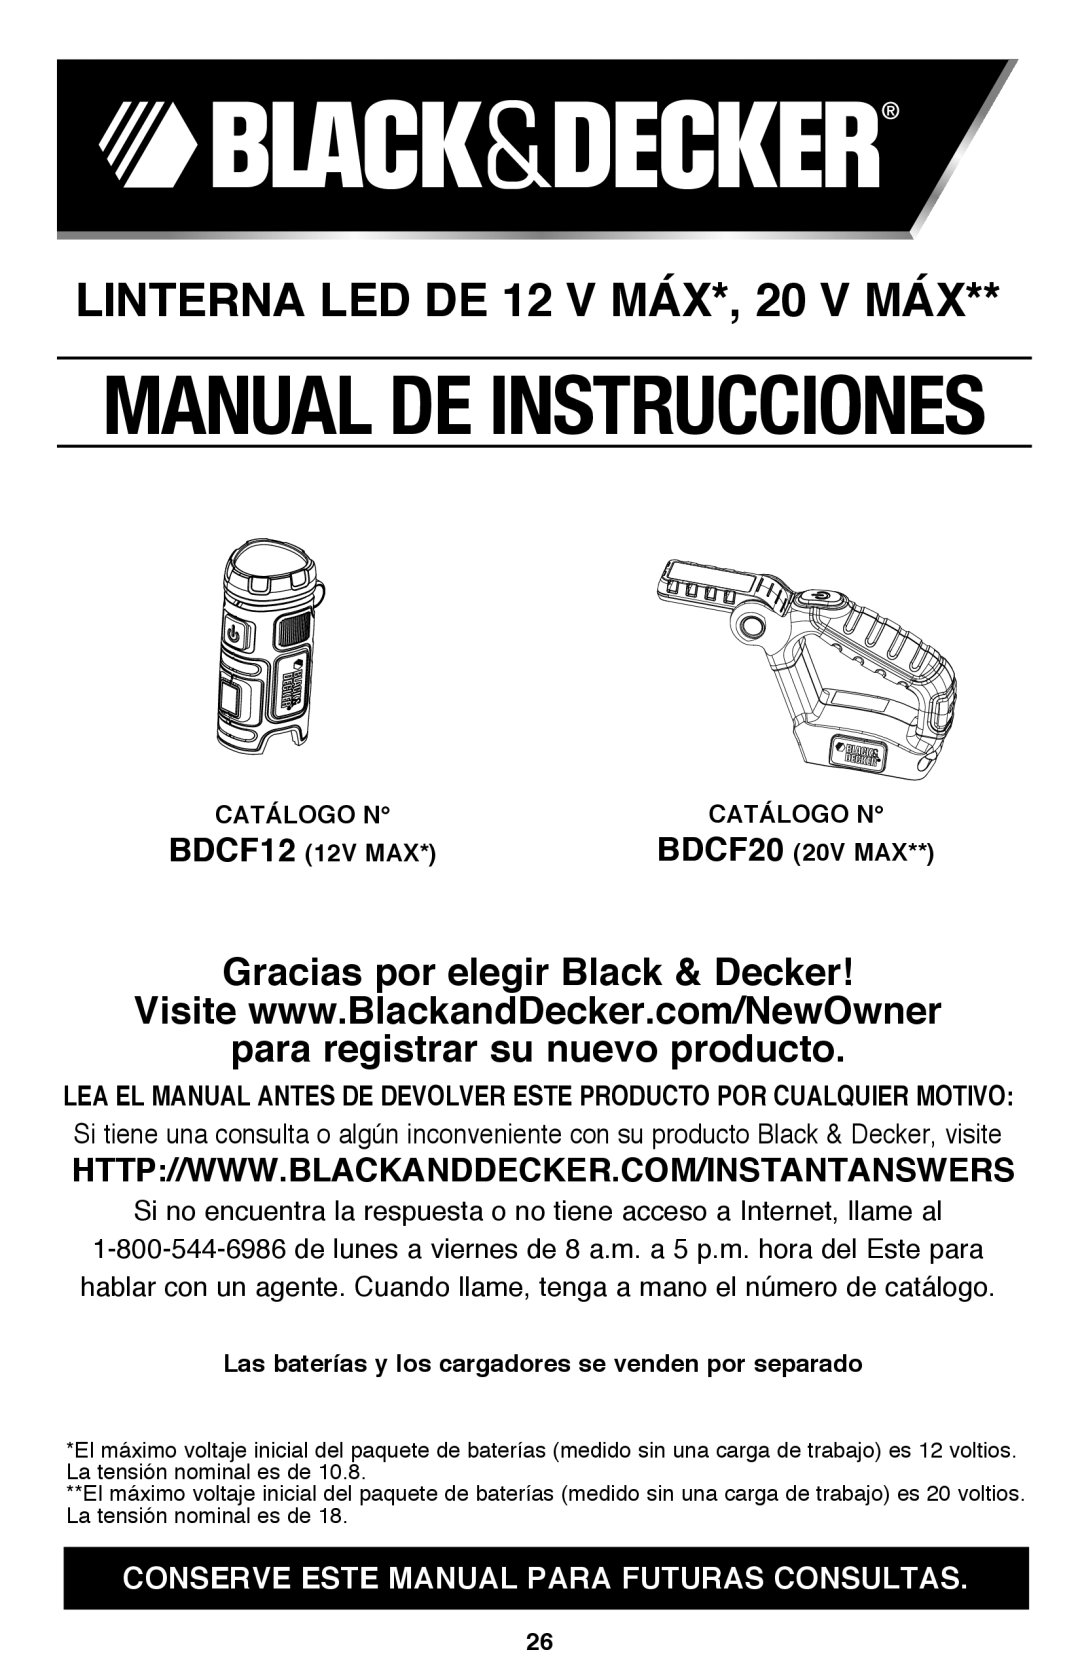 Black & Decker BDCF20 LINTERNA LED DE 12 V MÁX*, 20 V MÁX, Gracias por elegir Black & Decker, Manual De Instrucciones 